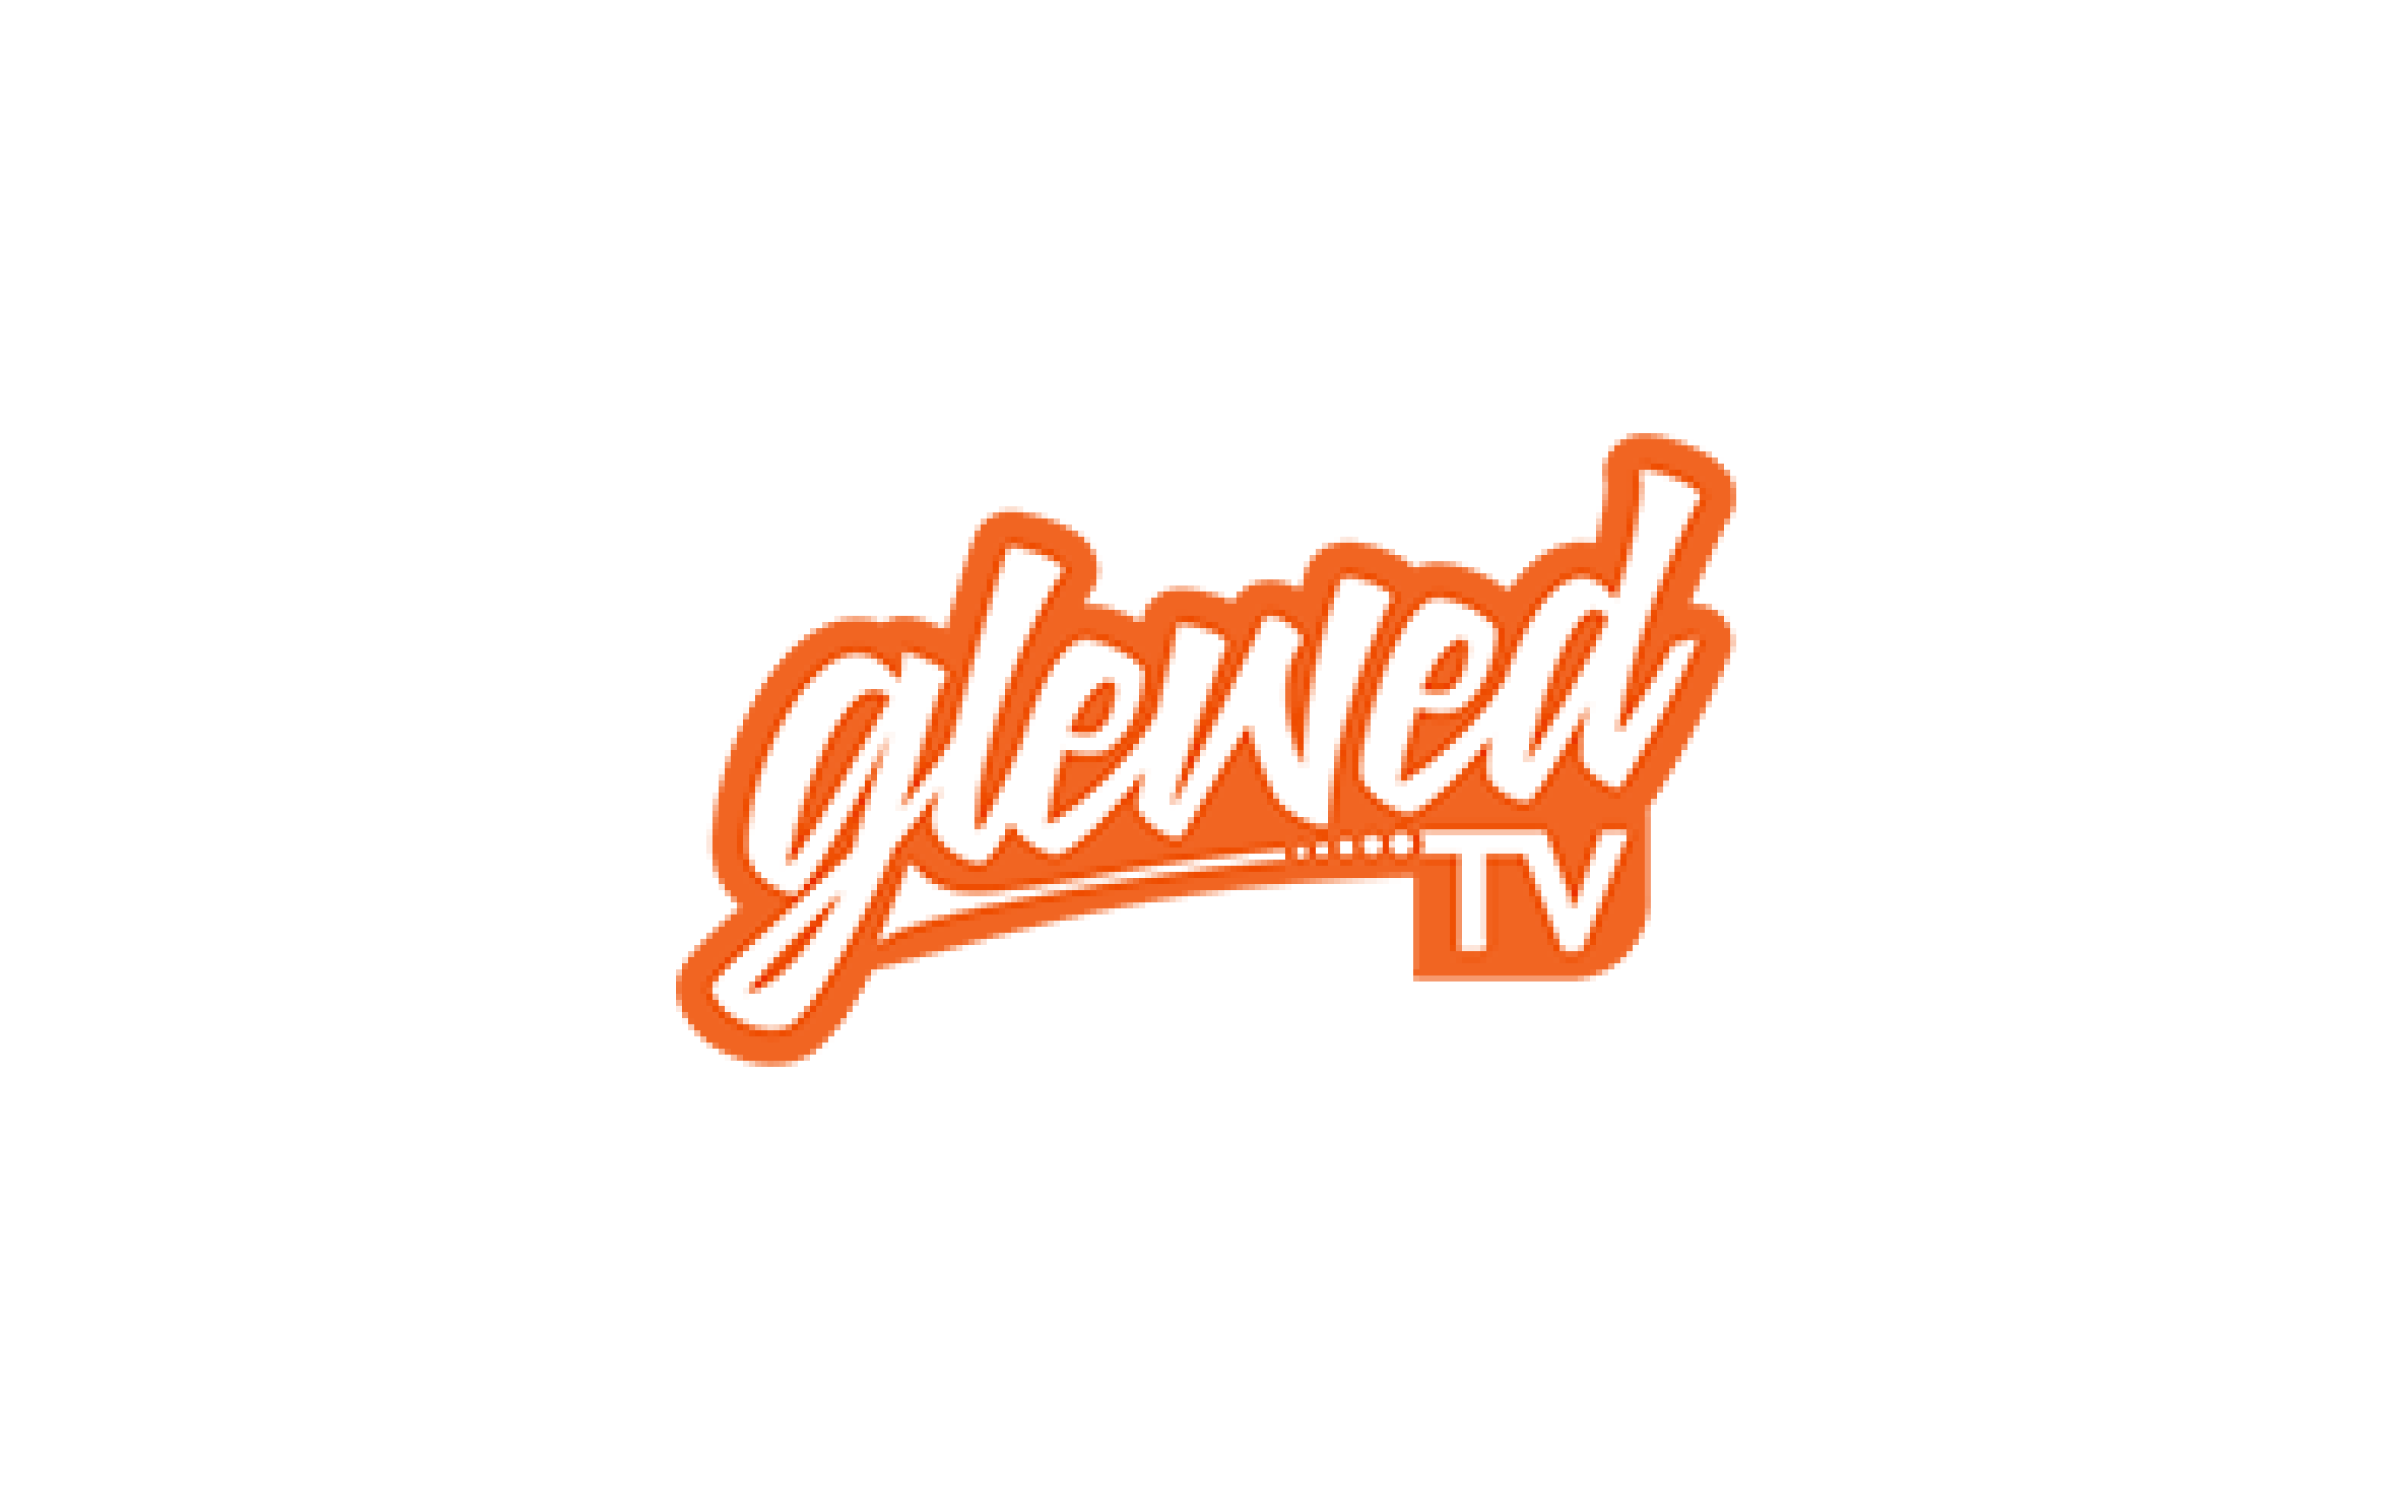 Logo Glewedtv